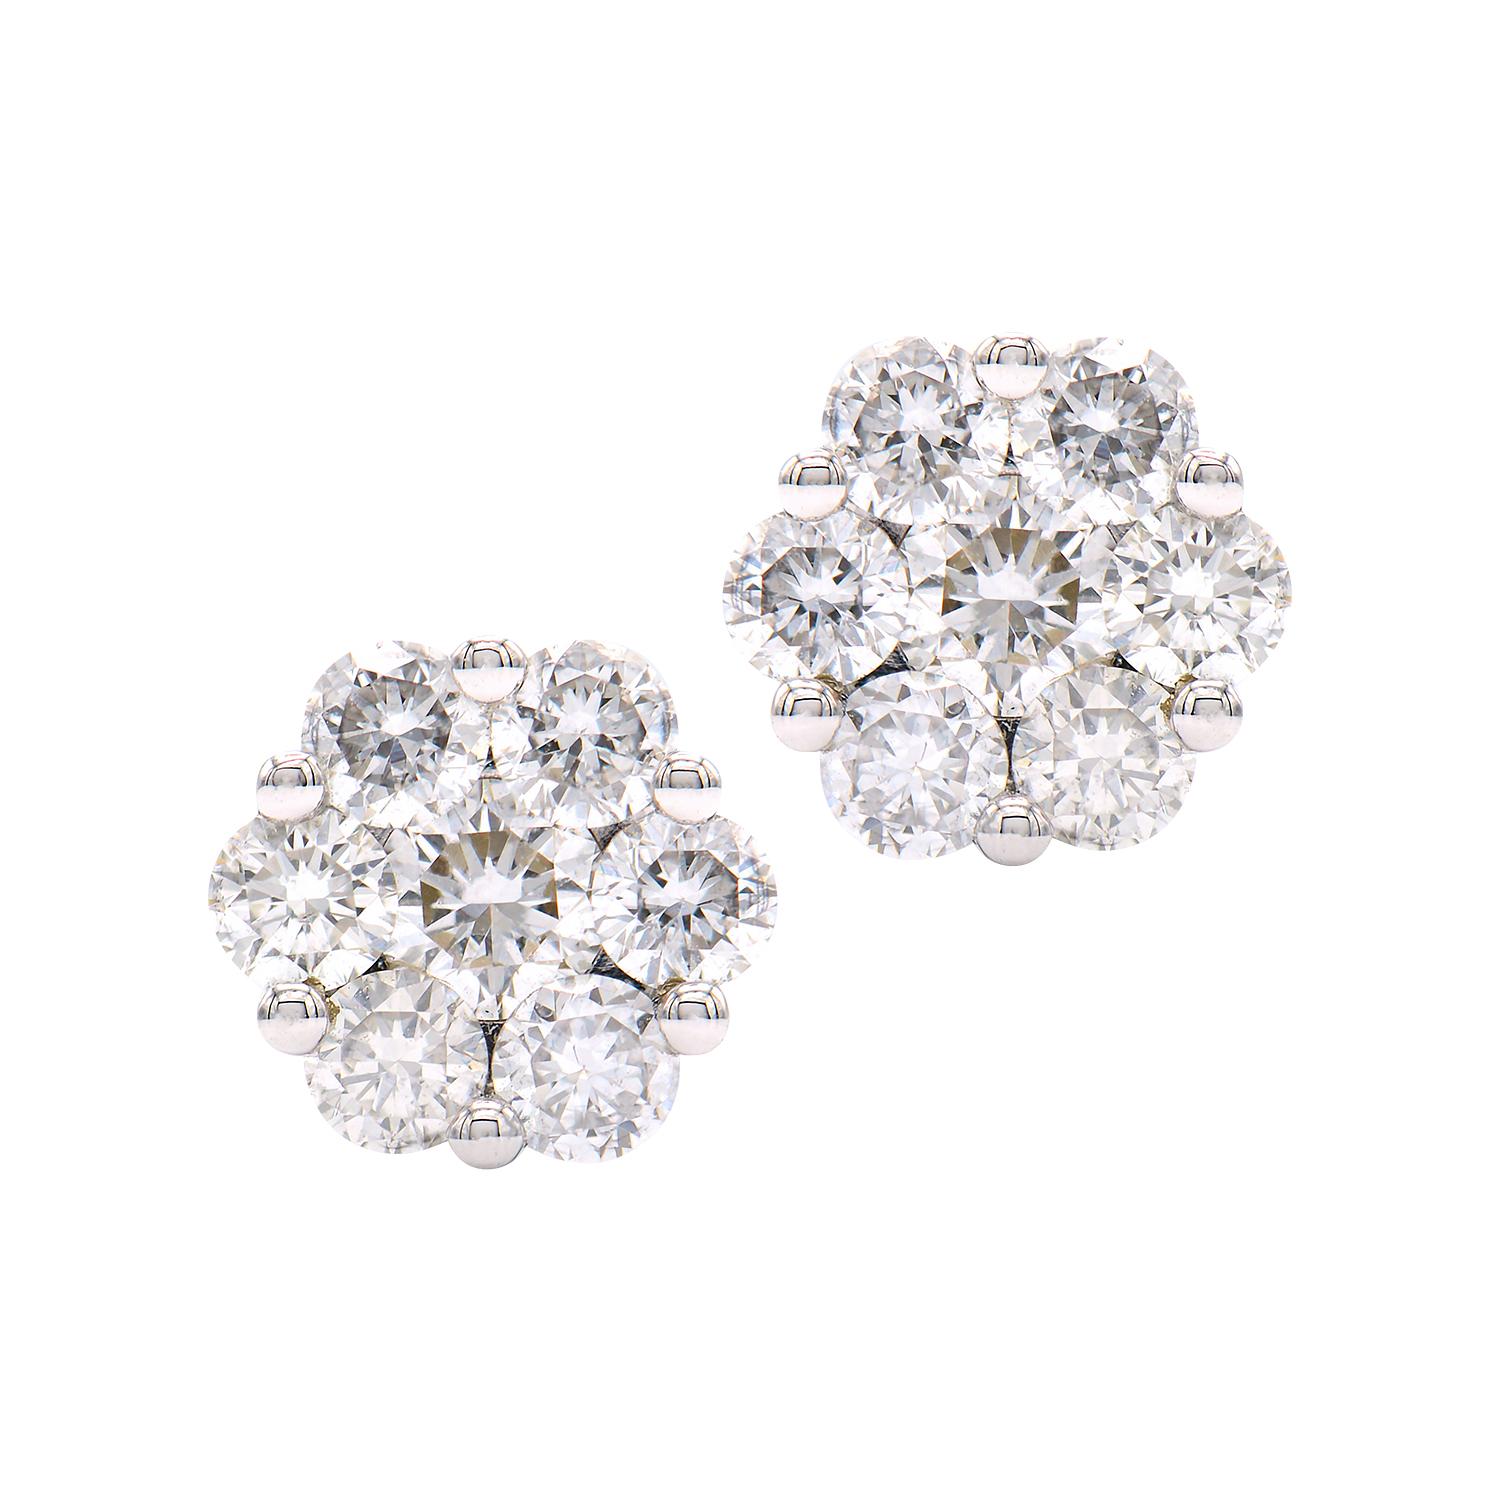 Diese wunderschönen Diamant-Cluster-Ohrringe sind aus 1,4 Gramm 14k Weißgold gefertigt. In den Zentren befinden sich 2 größere Diamanten von insgesamt 0,15 Karat, die von 12 kleineren Diamanten von insgesamt 0,44 Karat umgeben sind. Diese Ohrringe